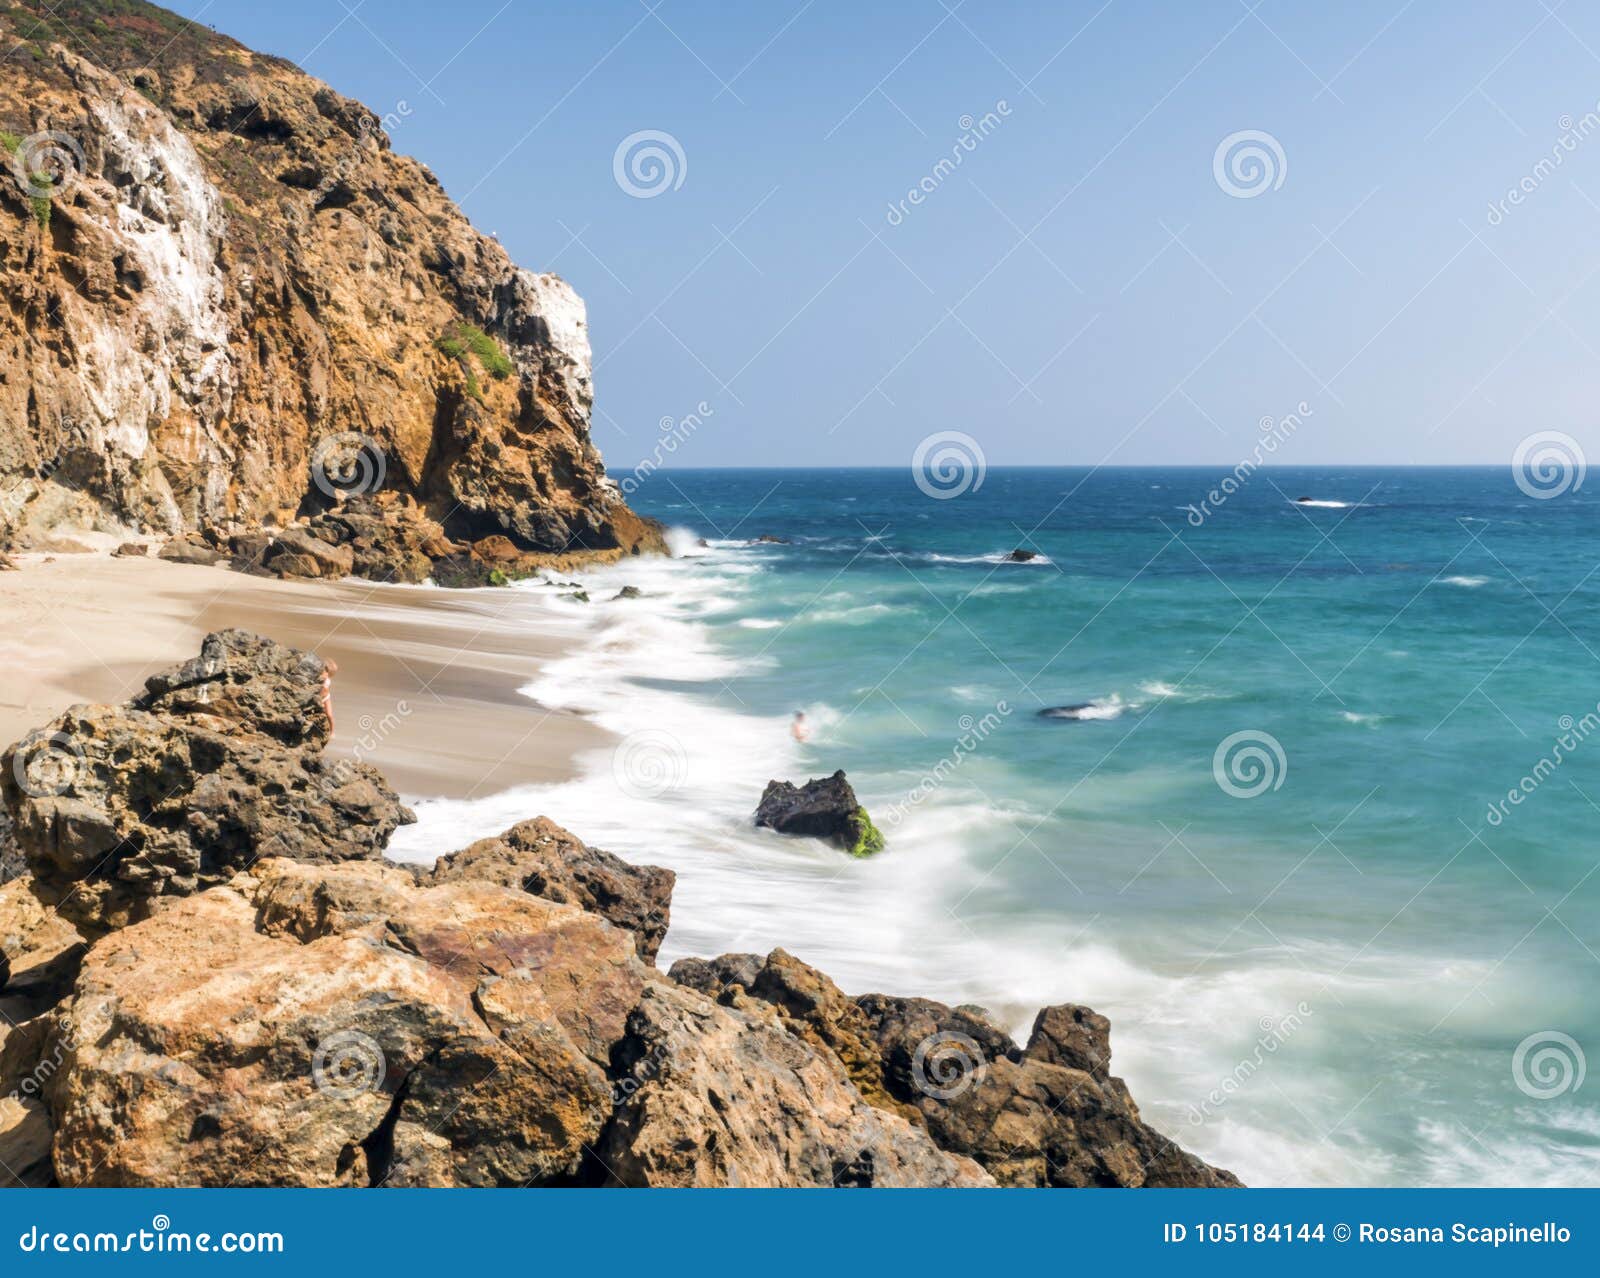 dume cove malibu, zuma beach, emerald and blue water in a quite paradise beach surrounded by cliffs. dume cove, malibu, california